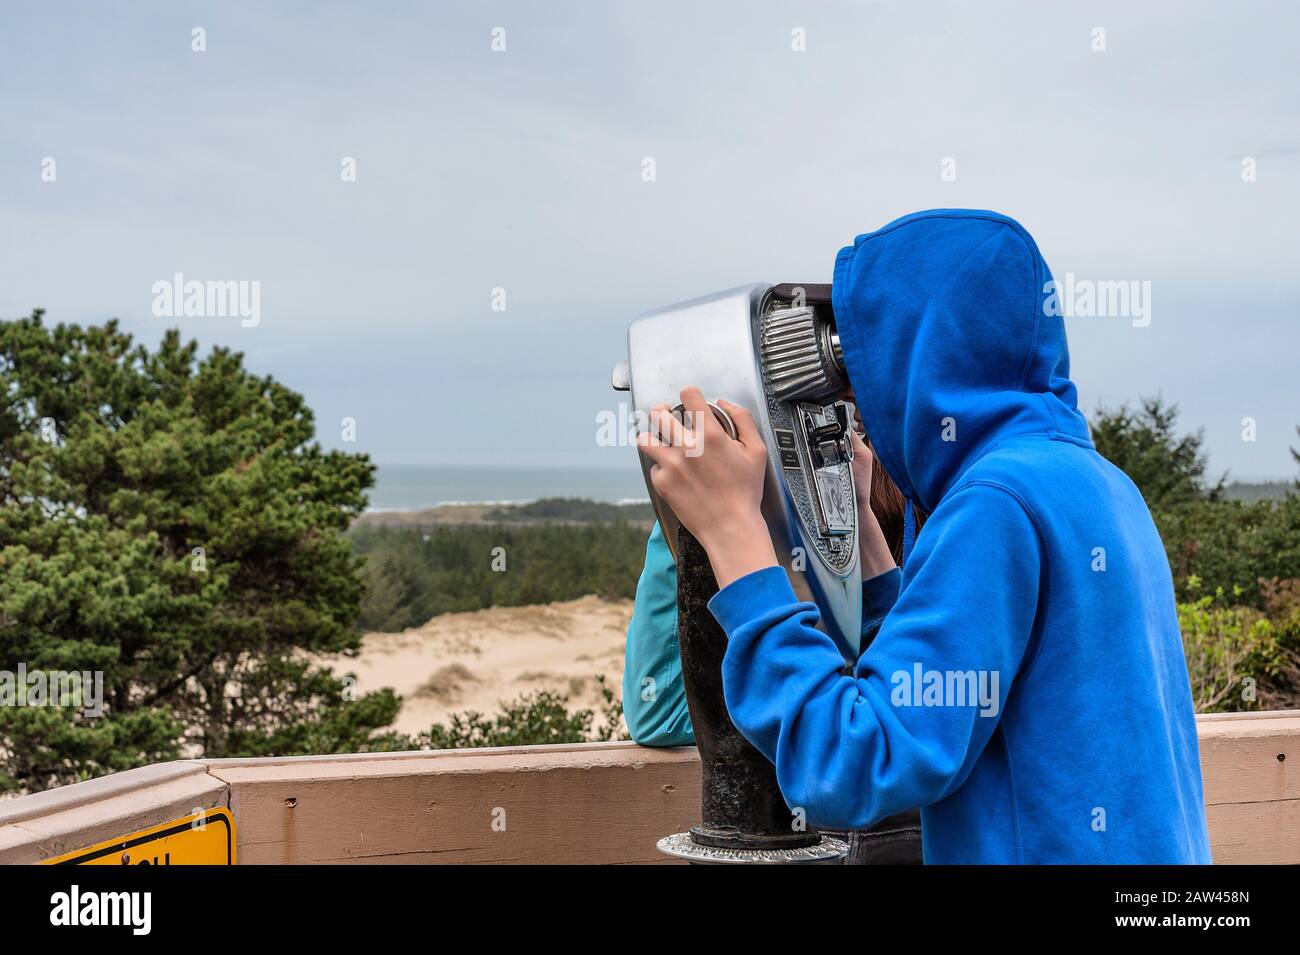 Sur la côte de l'Oregon près de Florence, un jeune adolescent regarde à travers un télescope la vue sur le paysage de la côte. Banque D'Images